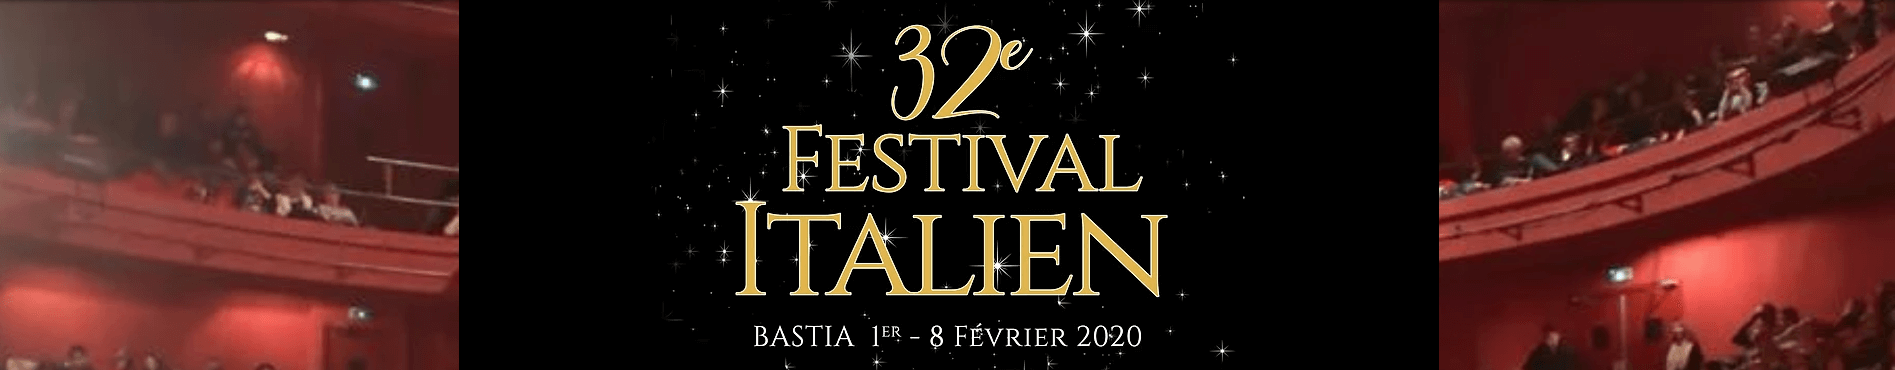 Ent c3 aate festival italien bastia 2020